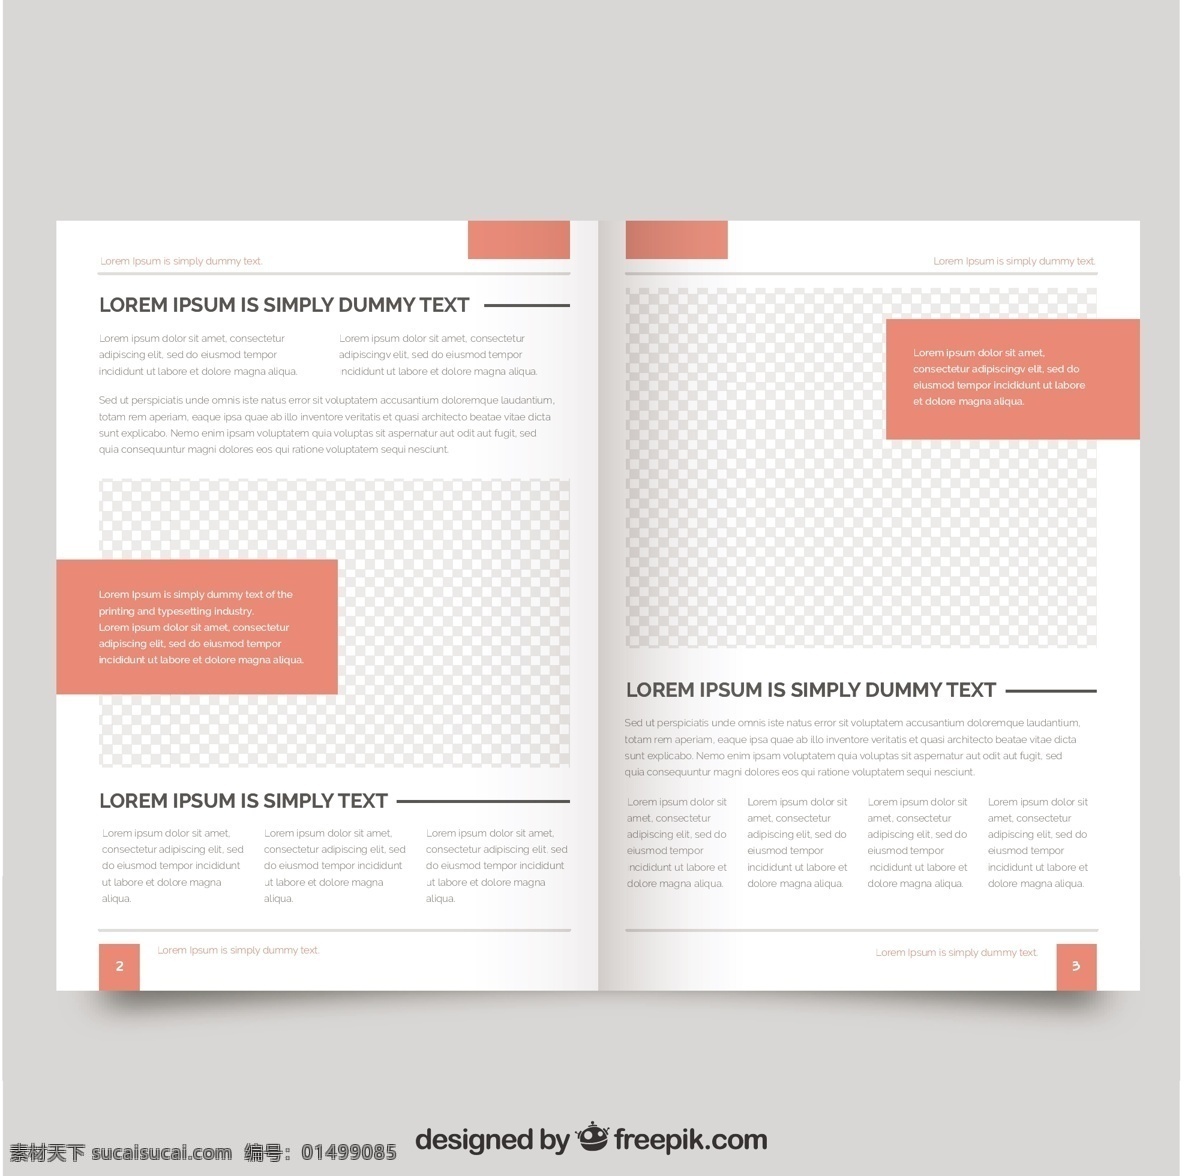 简单 杂志 模板 小册子 业务 传单 小册子设计 模型 数据 信息 传单模板 文具 杂志模板 模拟 白色